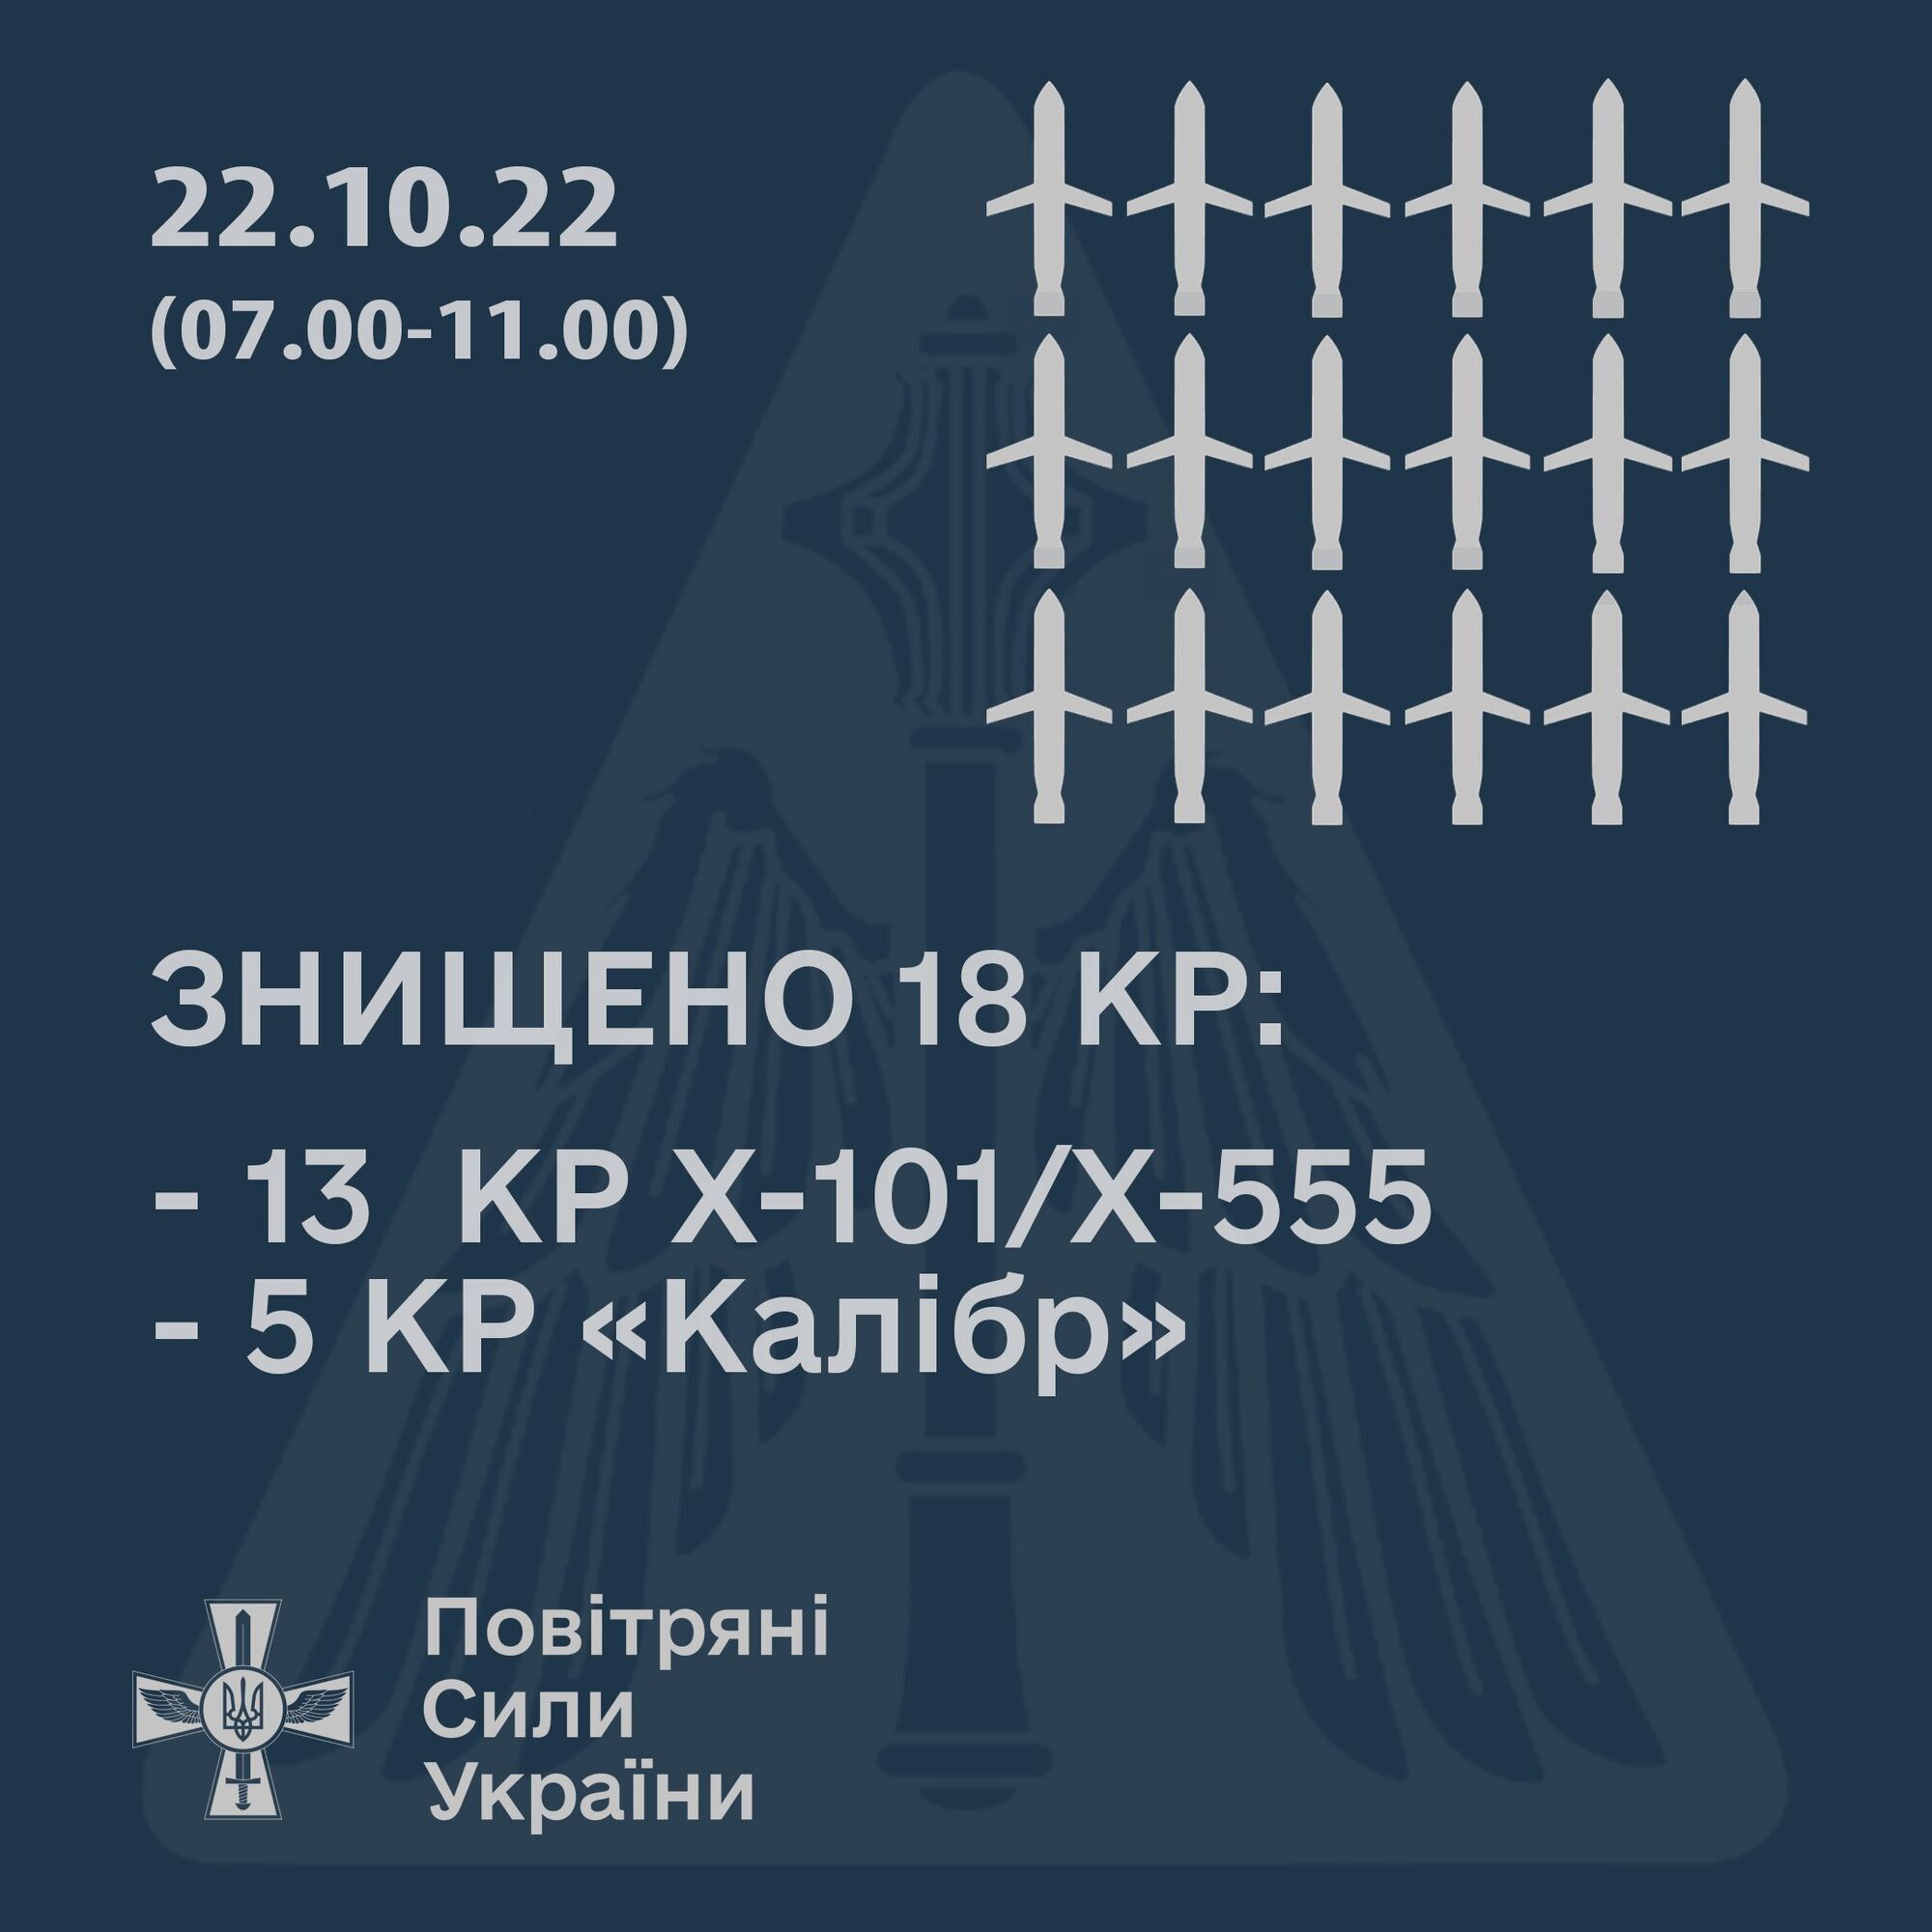 ВСУ 22 октября сбили 20 вражеских крылатых ракет: появились подробности